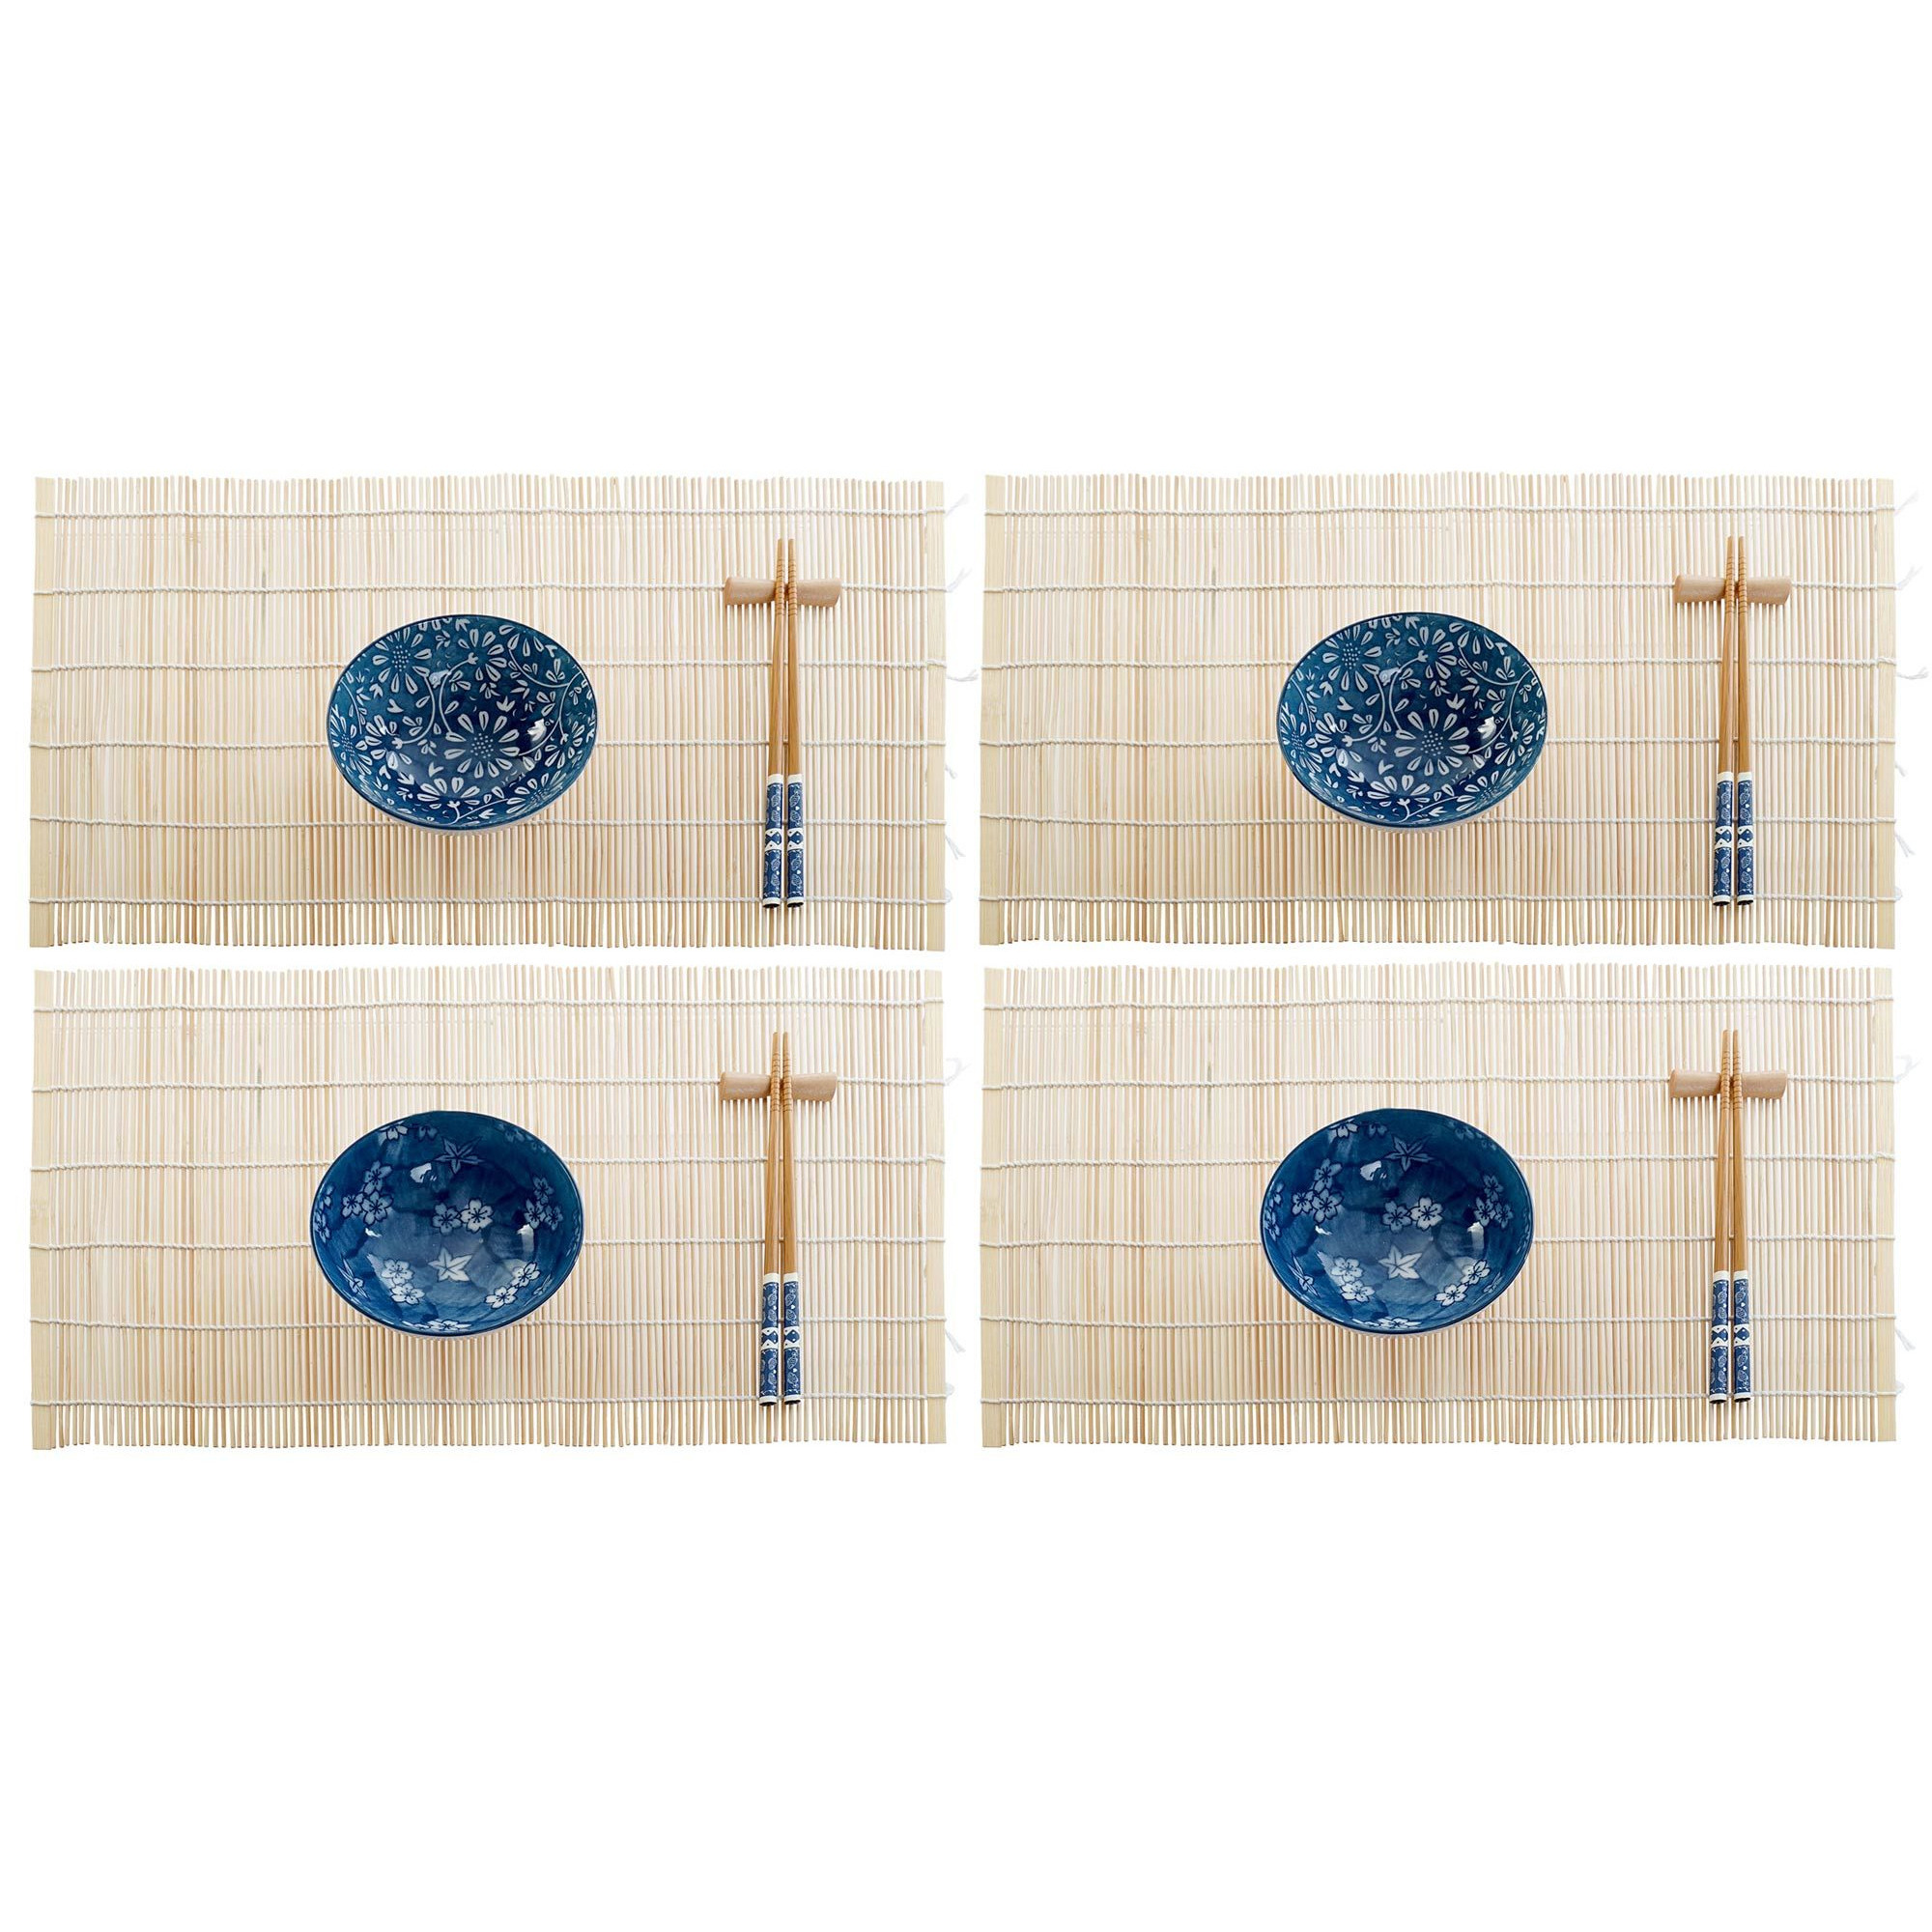 Items 16-delige sushi serveer set keramiek voor 4 personen wit/blauw -